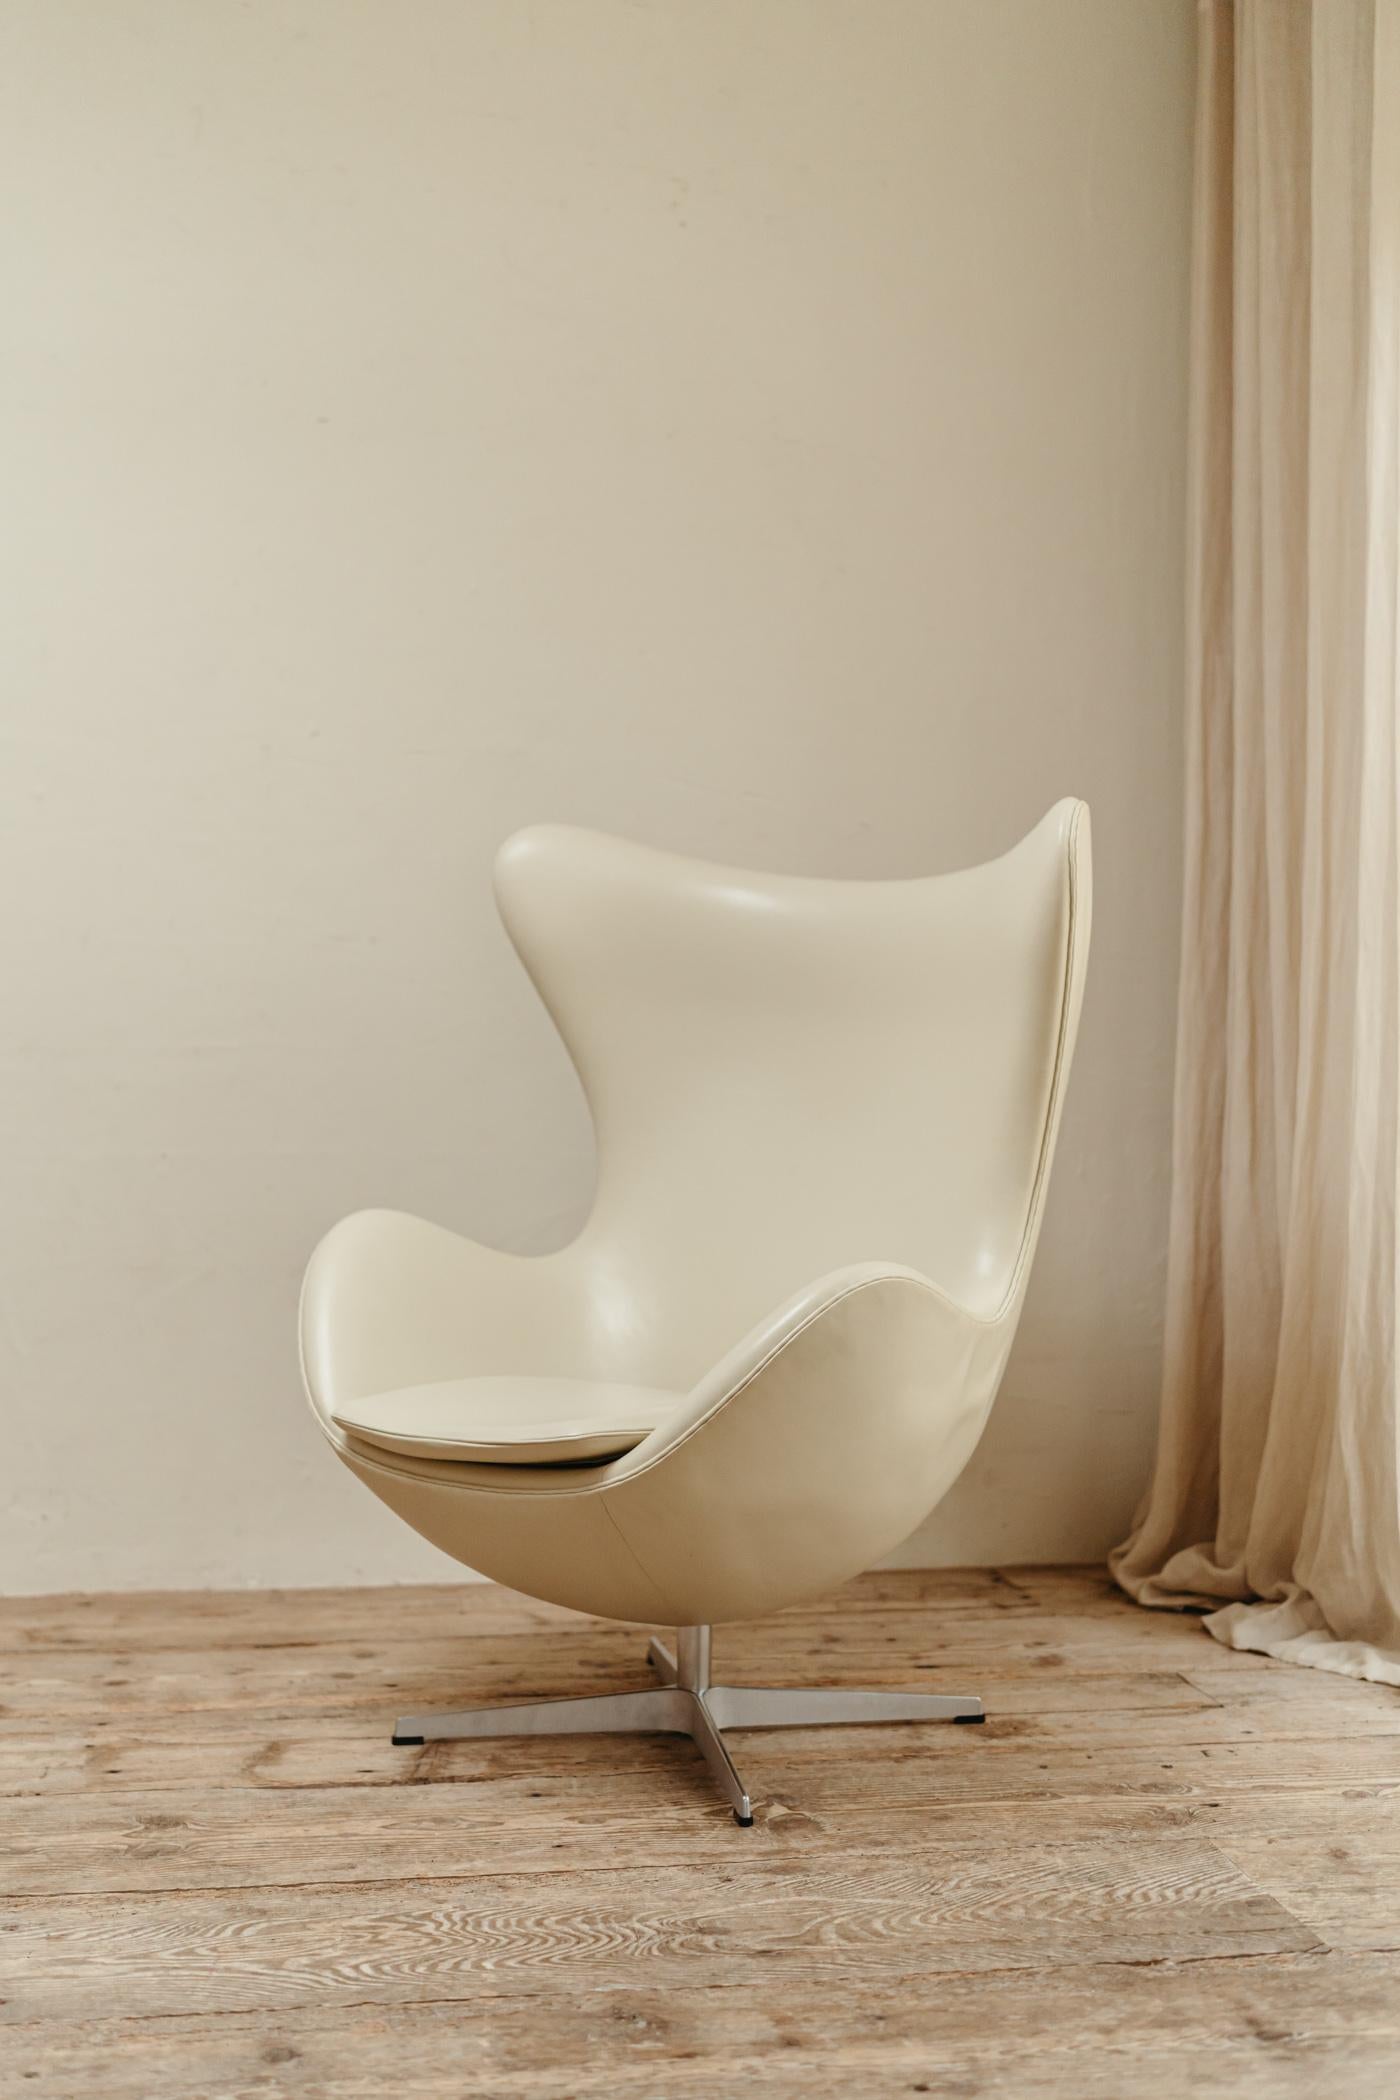 20th Century Egg Chair by Arne Jacobsen for Fritz Hansen For Sale